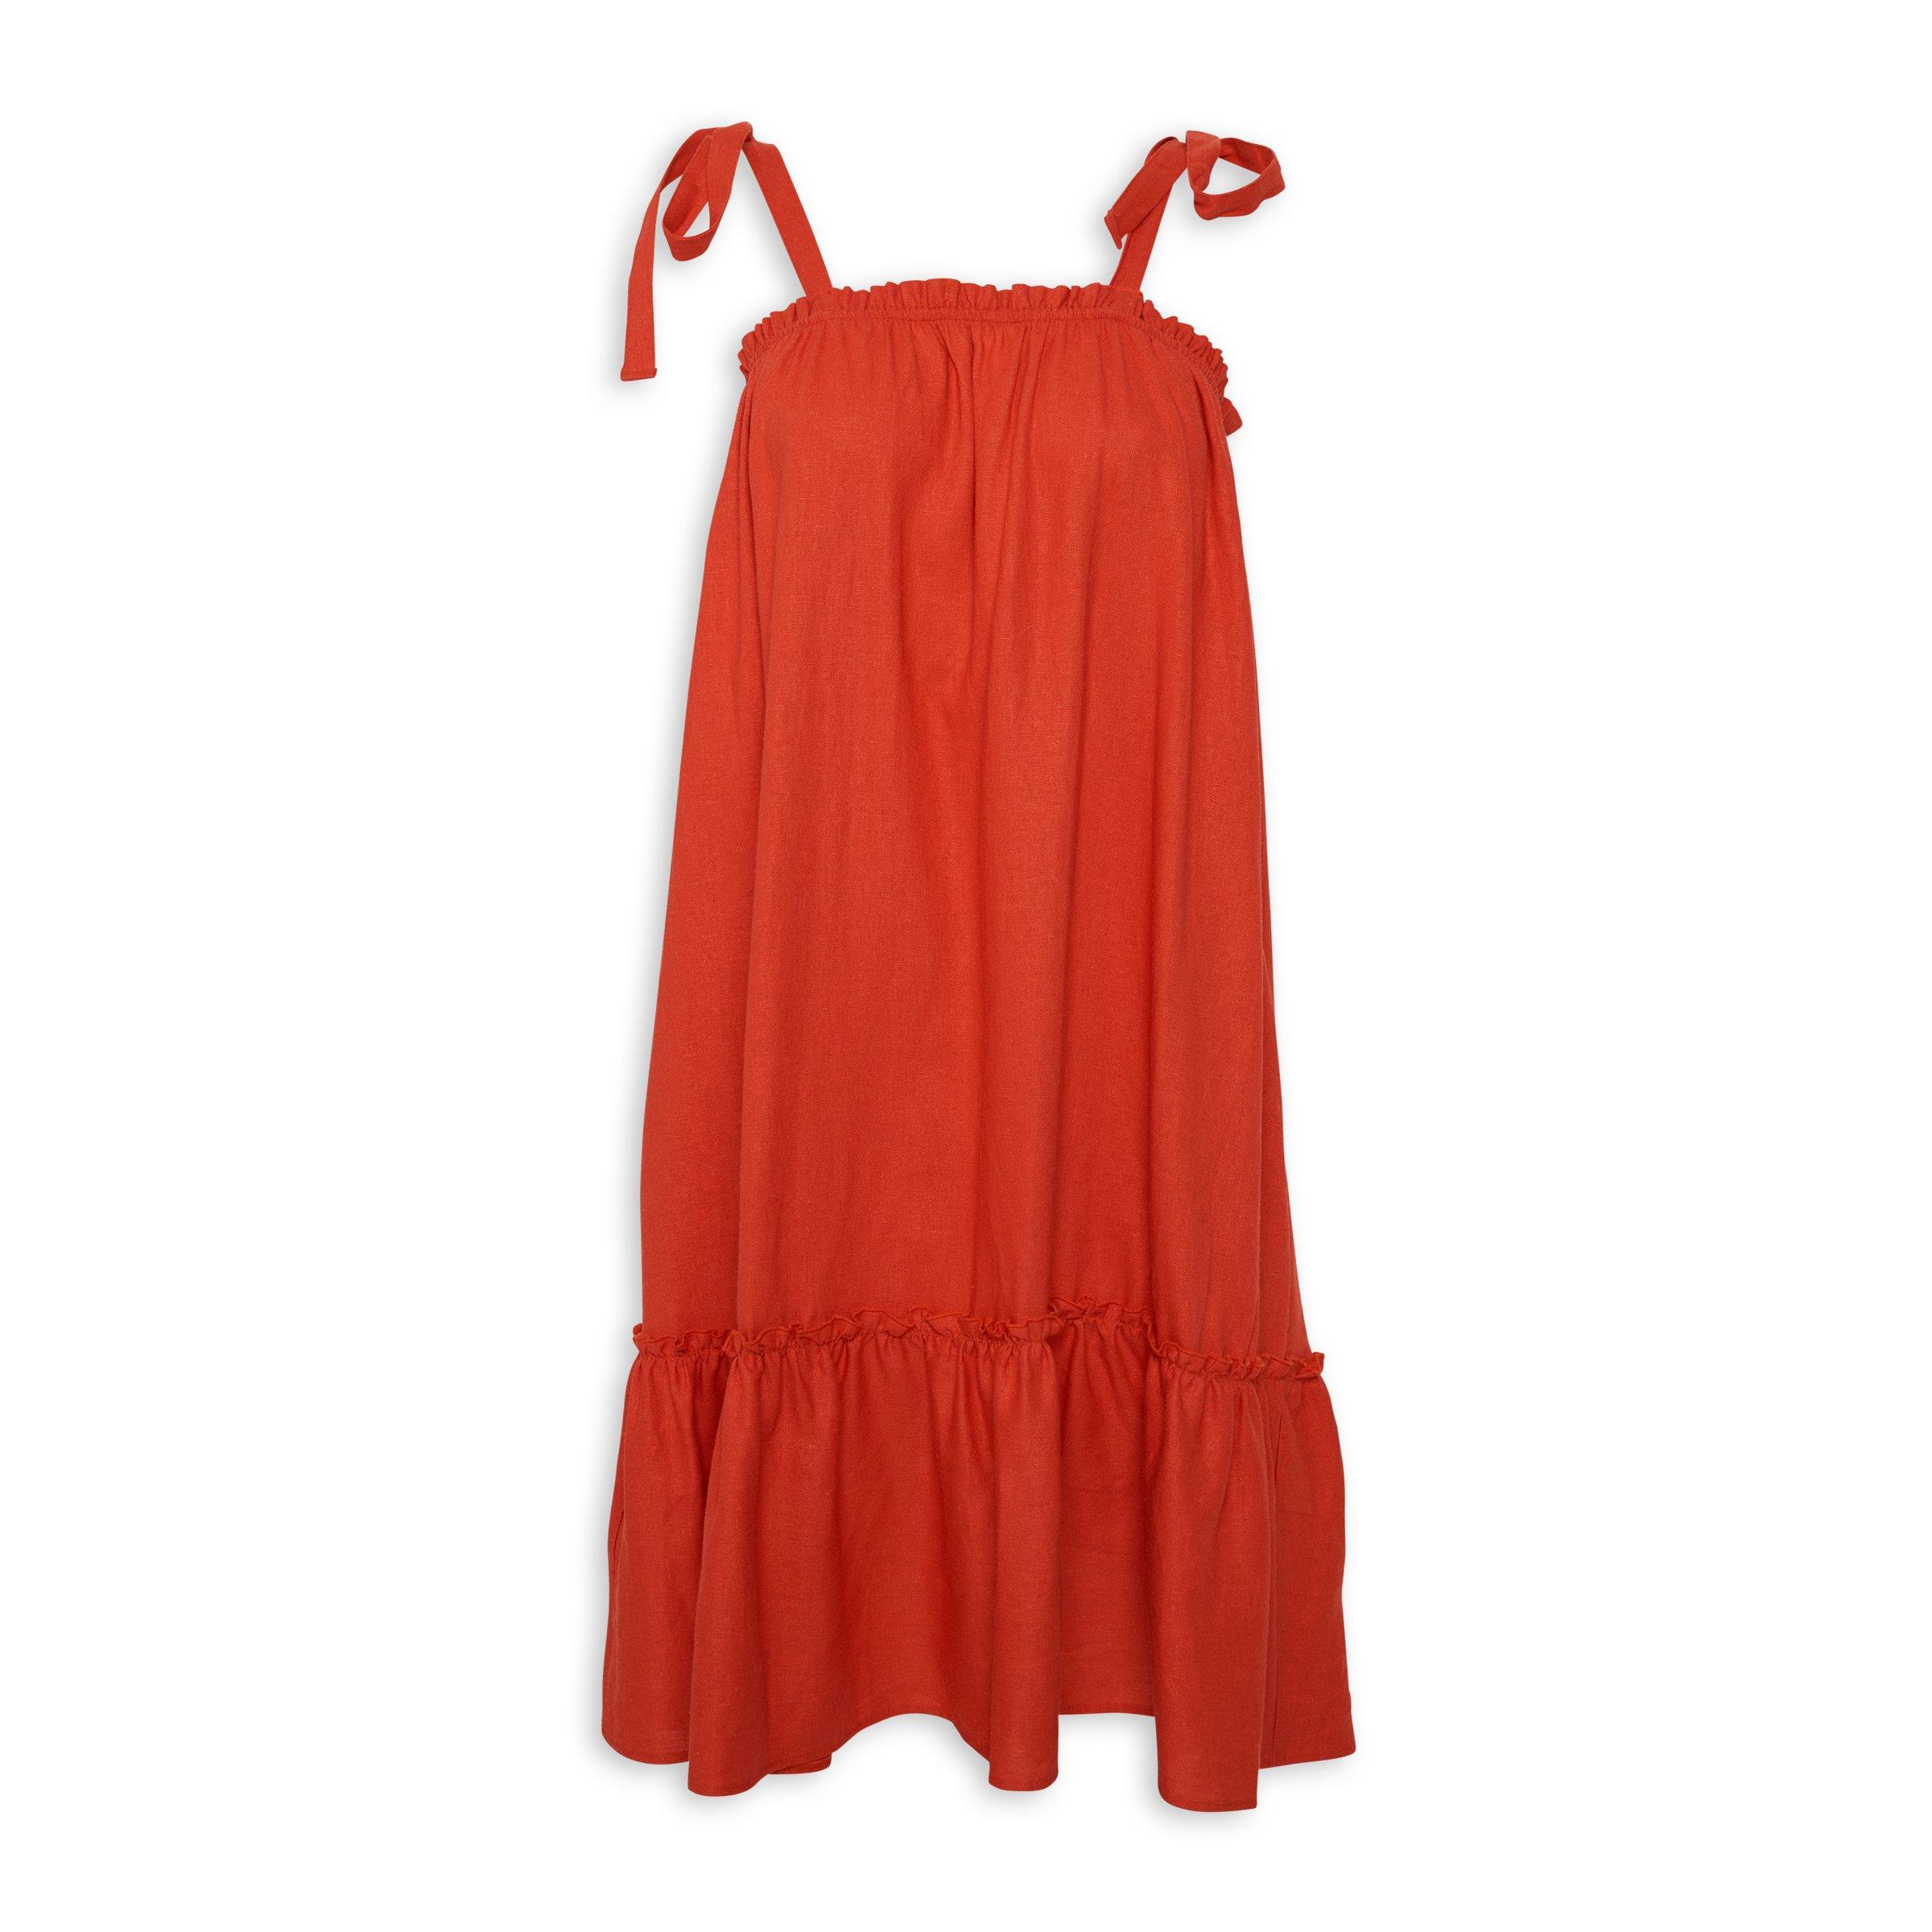 Buy Truworths Orange Linen Dress Online | Truworths